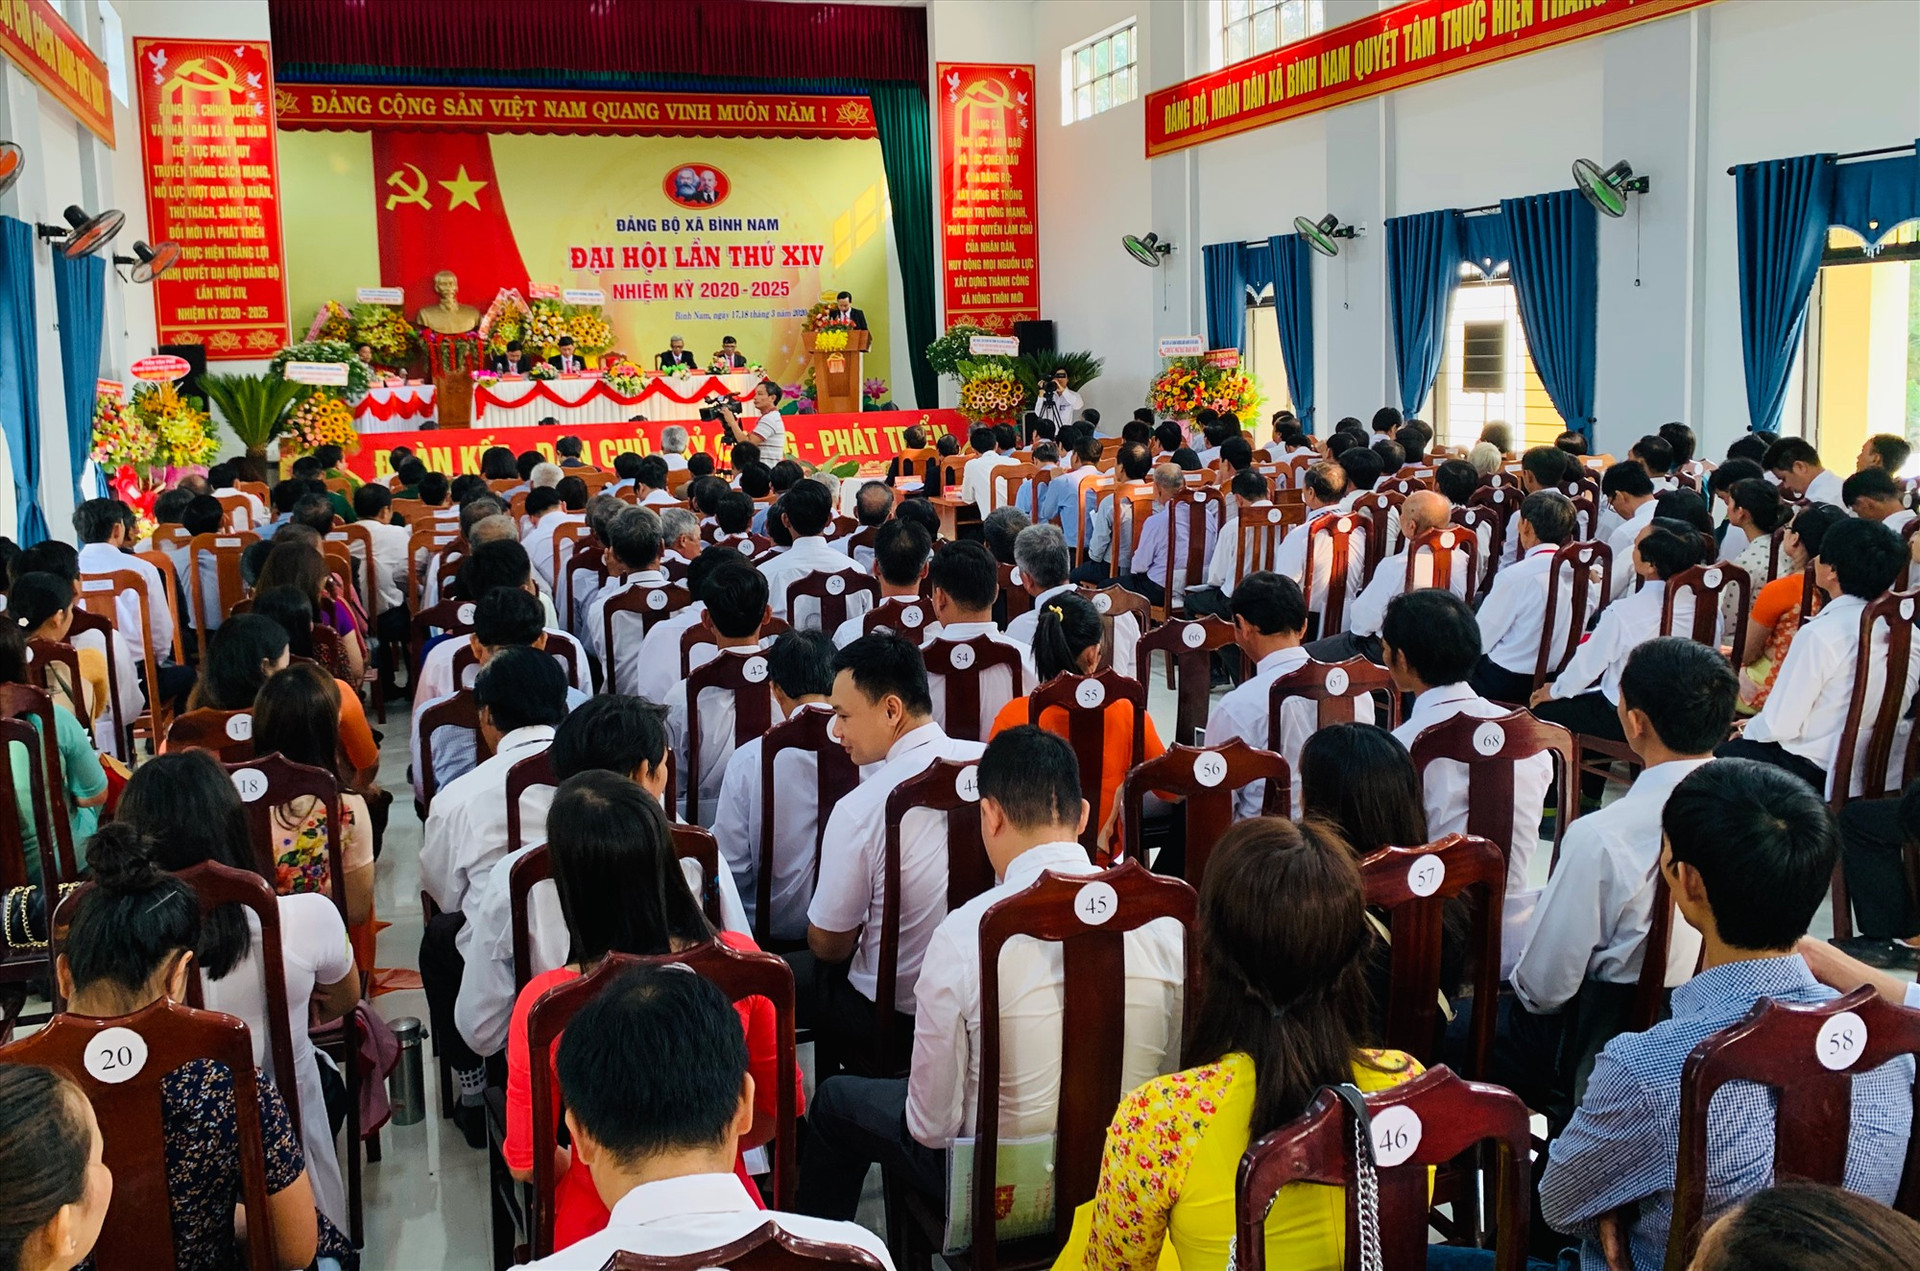 Quang cảnh Đại hội Đảng bộ xã Bình Nam lần thứ XIV nhiệm kỳ 2020 - 2025. Ảnh: PHAN VINH